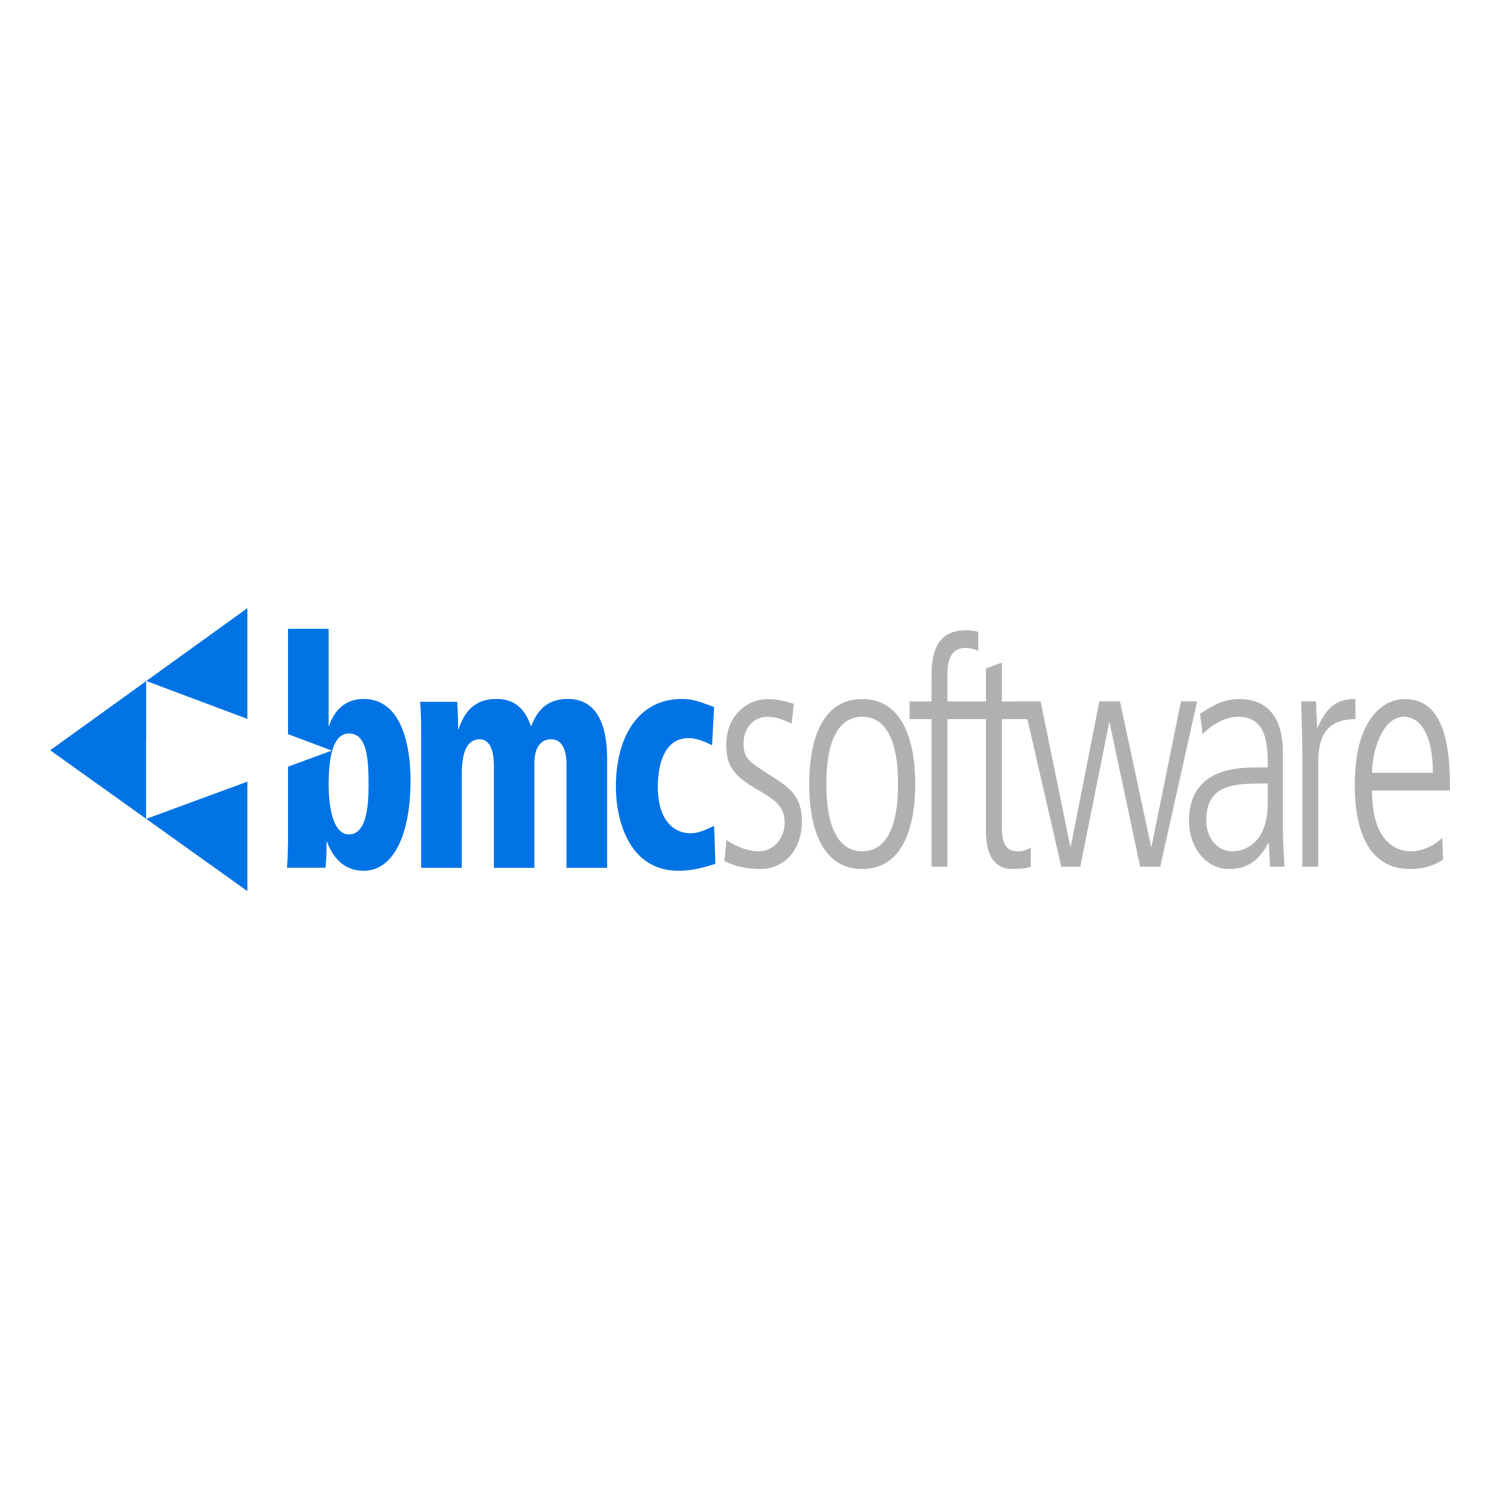 BMC Software Logo.jpg